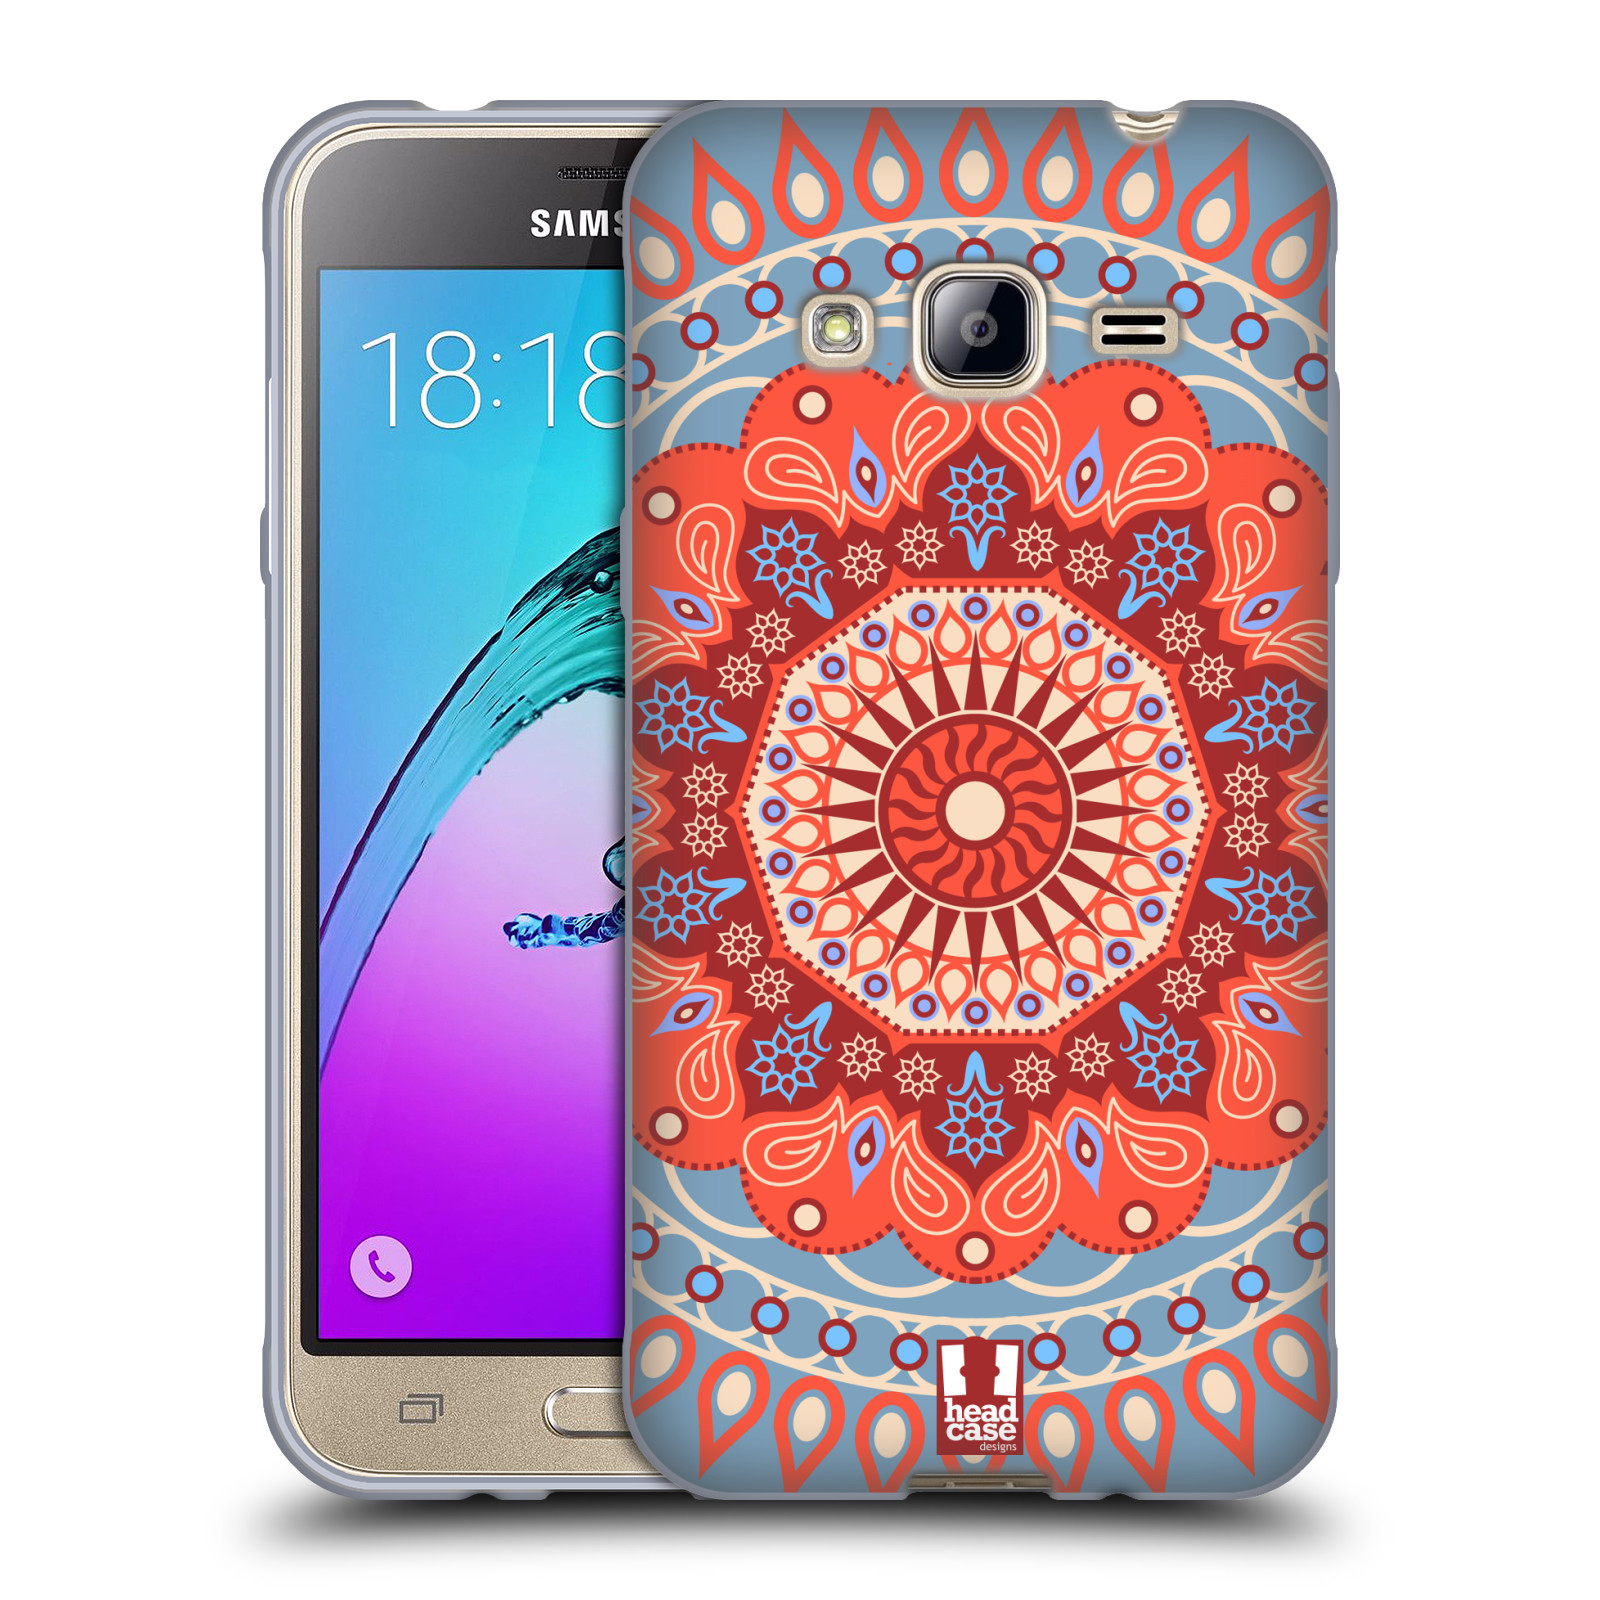 HEAD CASE silikonový obal na mobil Samsung Galaxy J3, J3 2016 vzor Indie Mandala slunce barevný motiv ČERVENÁ A MODRÁ